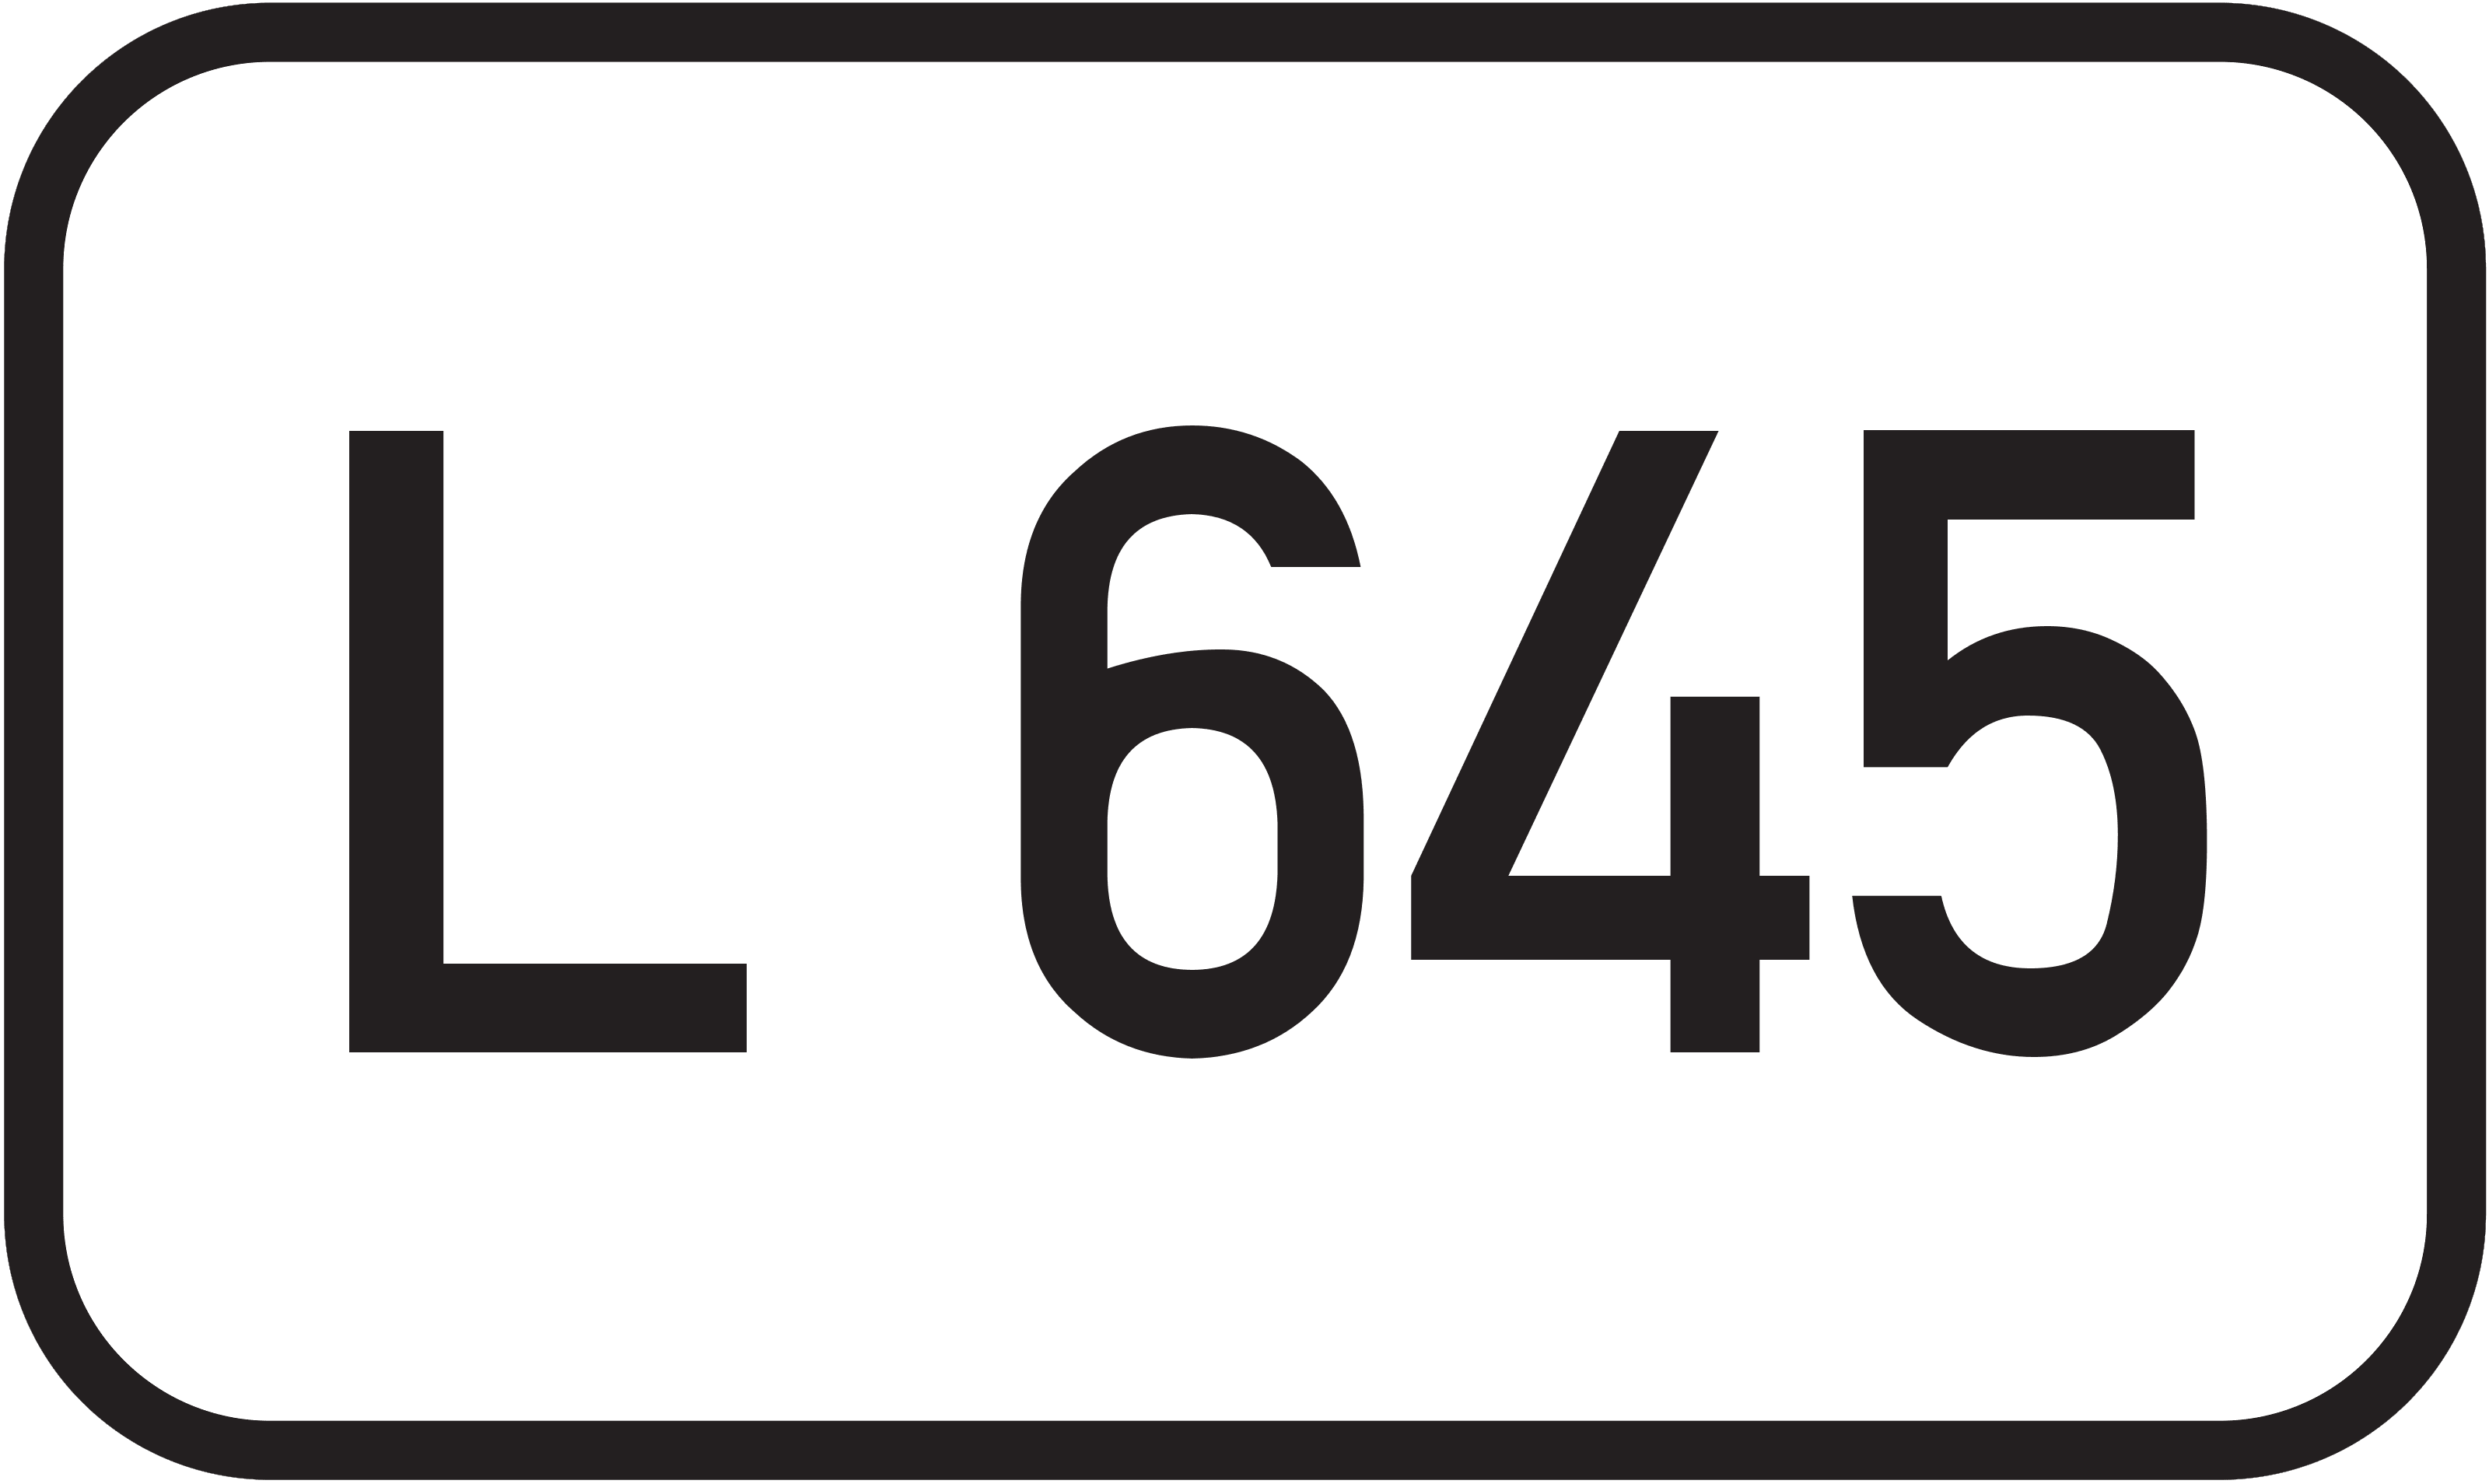 Landesstraße L 645